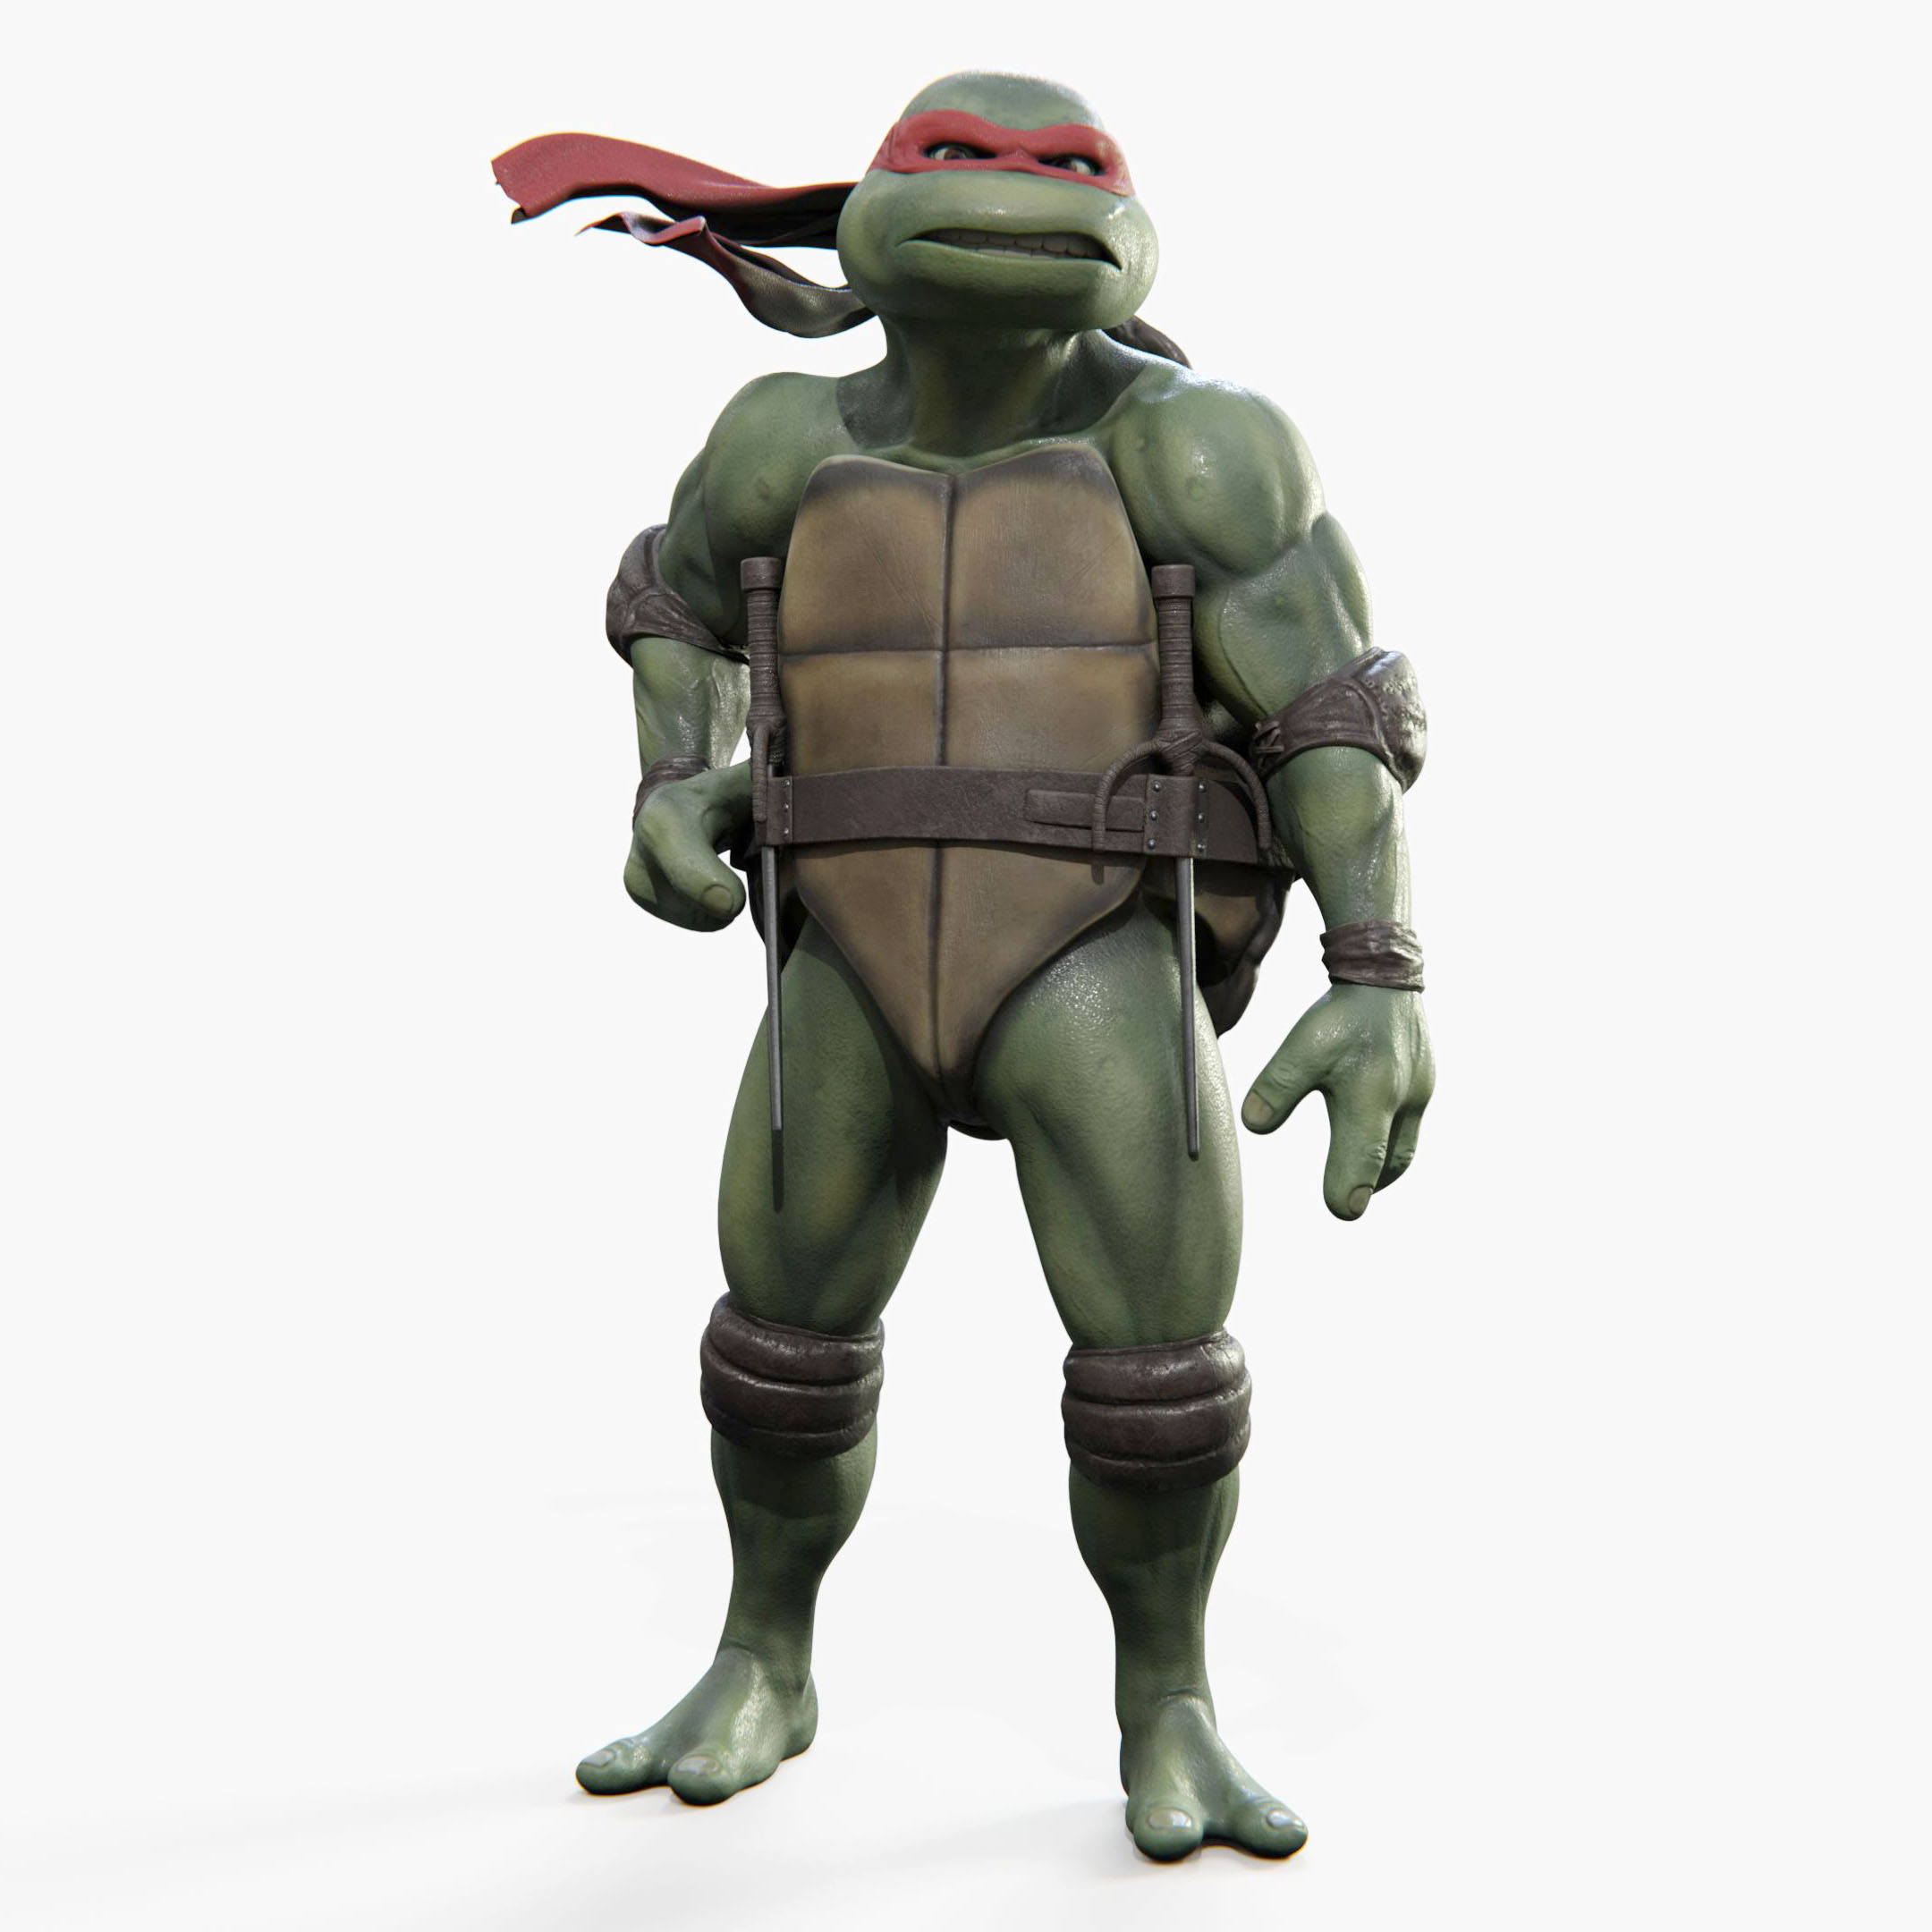 Raphael Teenage Mutant Ninja Turtle Image